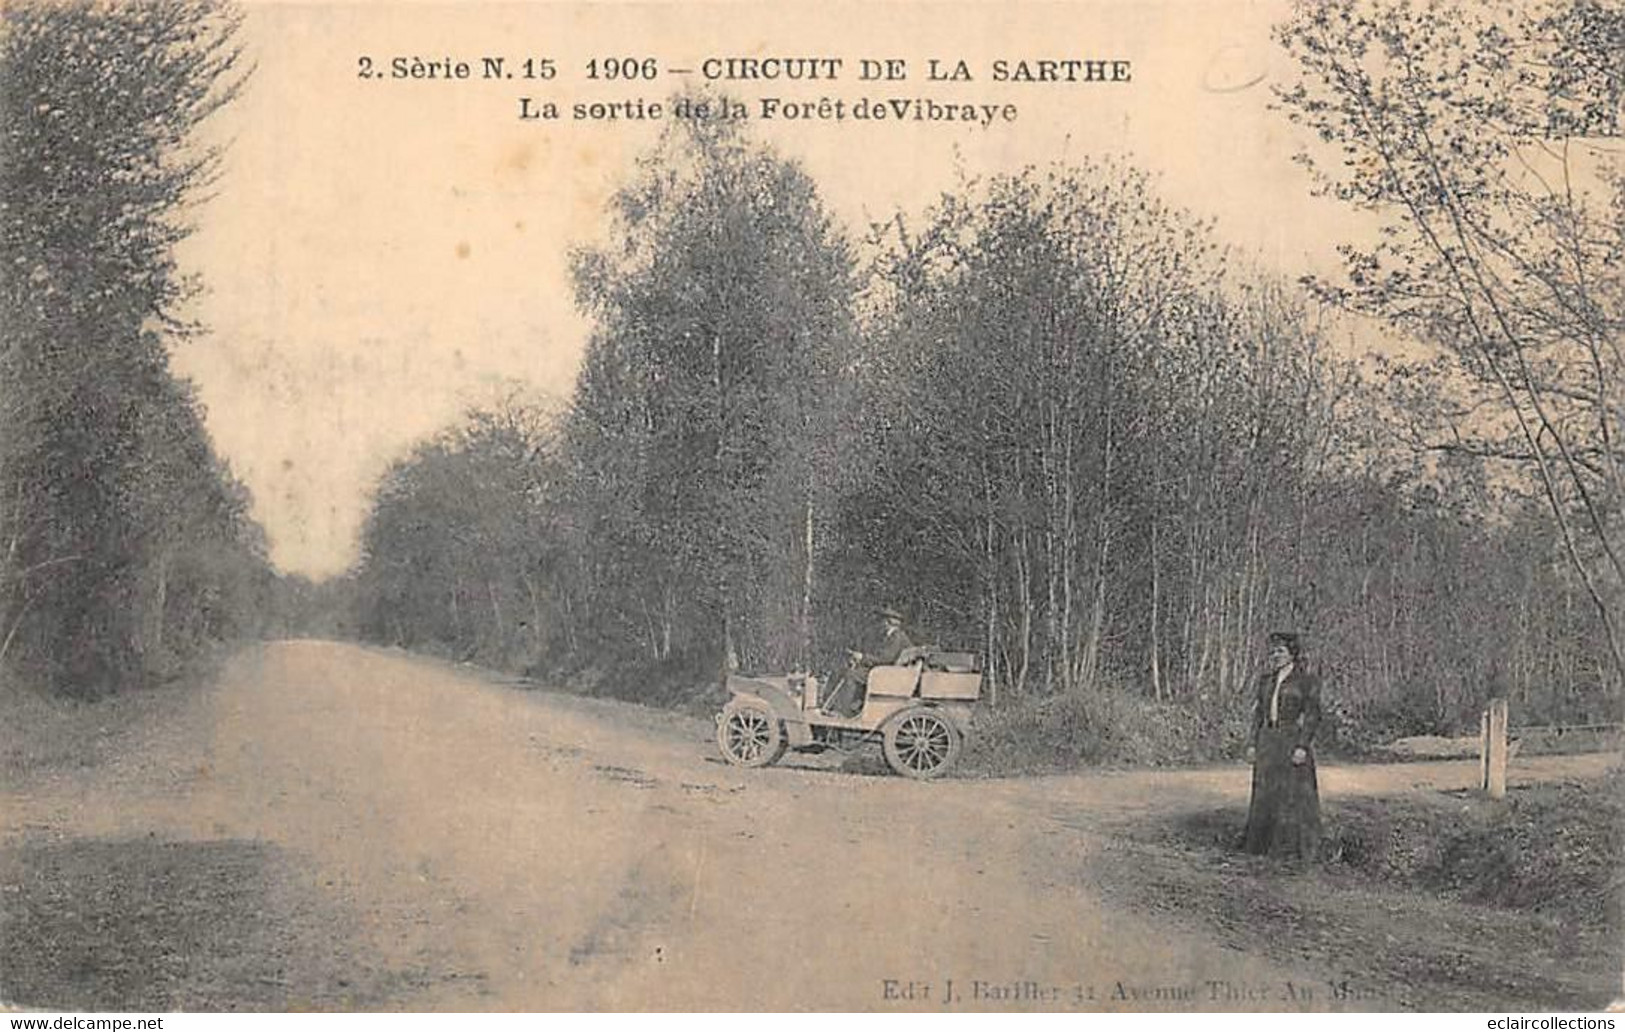 Thème Sport Automobile. Circuit de la Sarthe Le Mans  De la Série n° 2  soit 24 cartes         (voir scan)